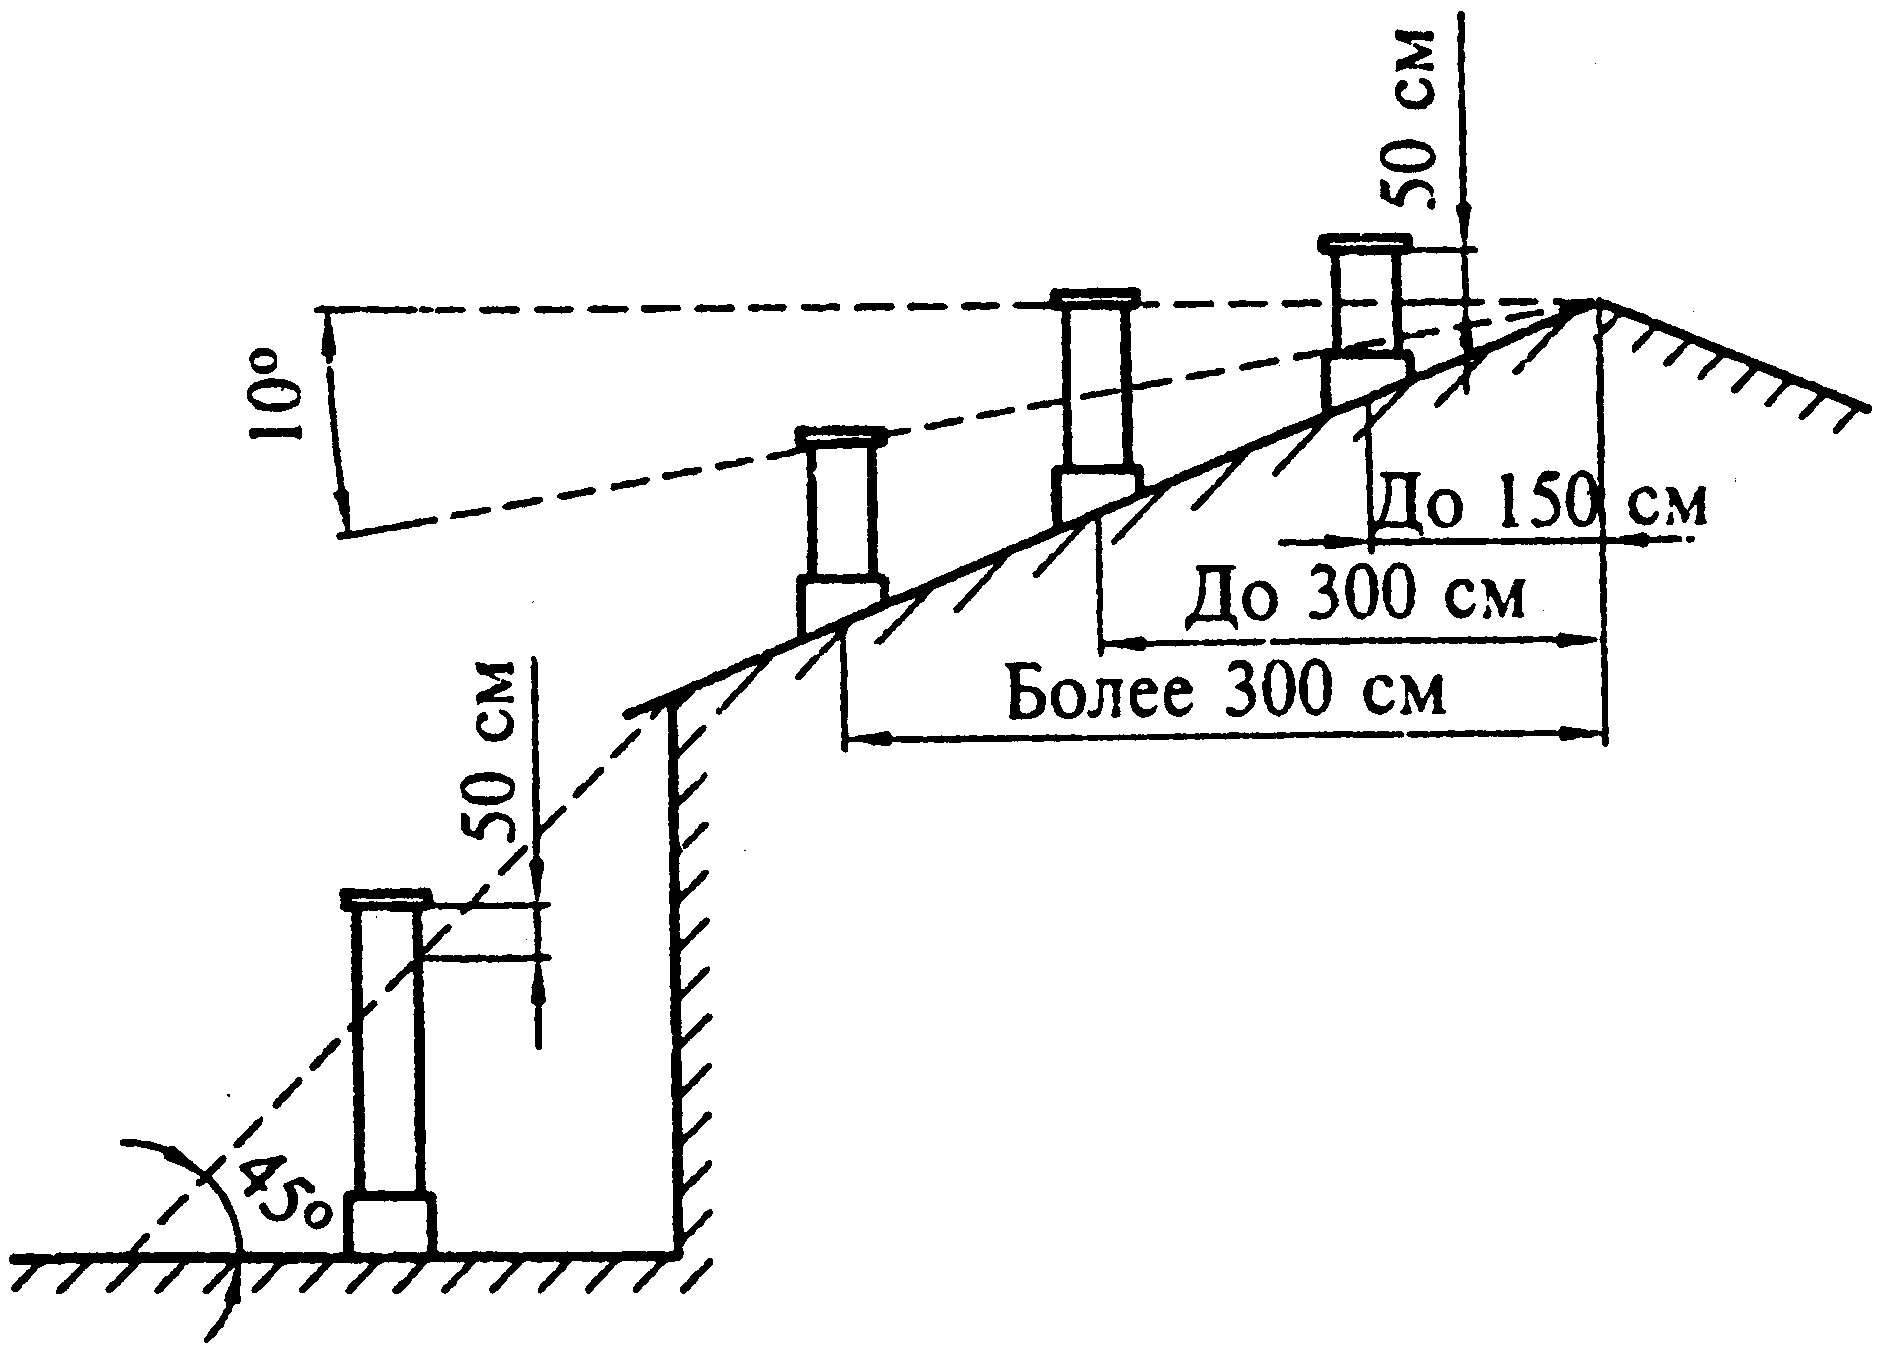 Высота трубы вентиляции над крышей - требования и расчет